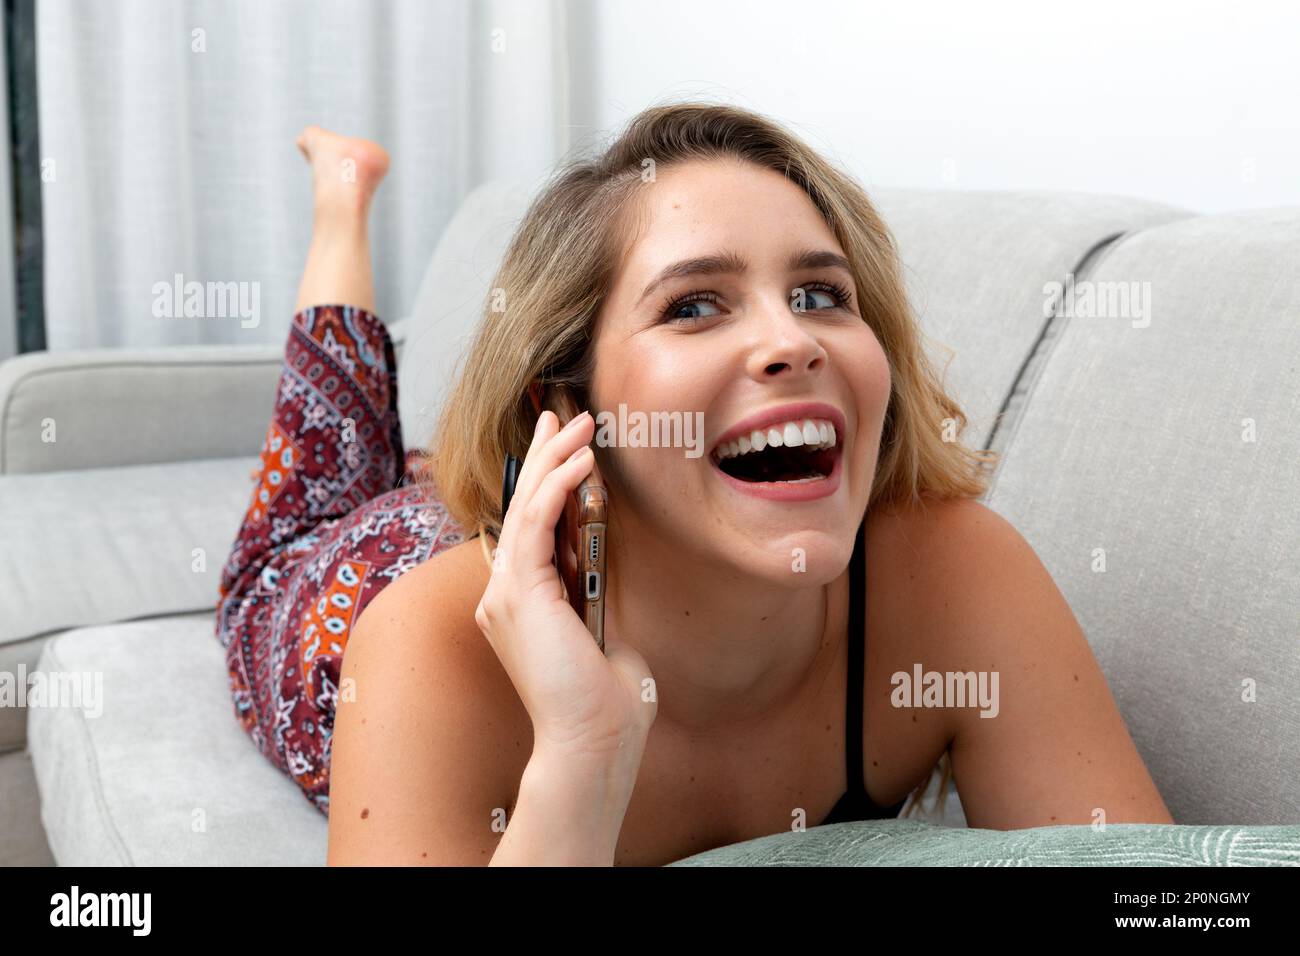 Die junge blonde Frau führt ein freundliches Gespräch am Telefon, während sie sich auf der Couch mit einem Lächeln im Gesicht ruht. Stockfoto